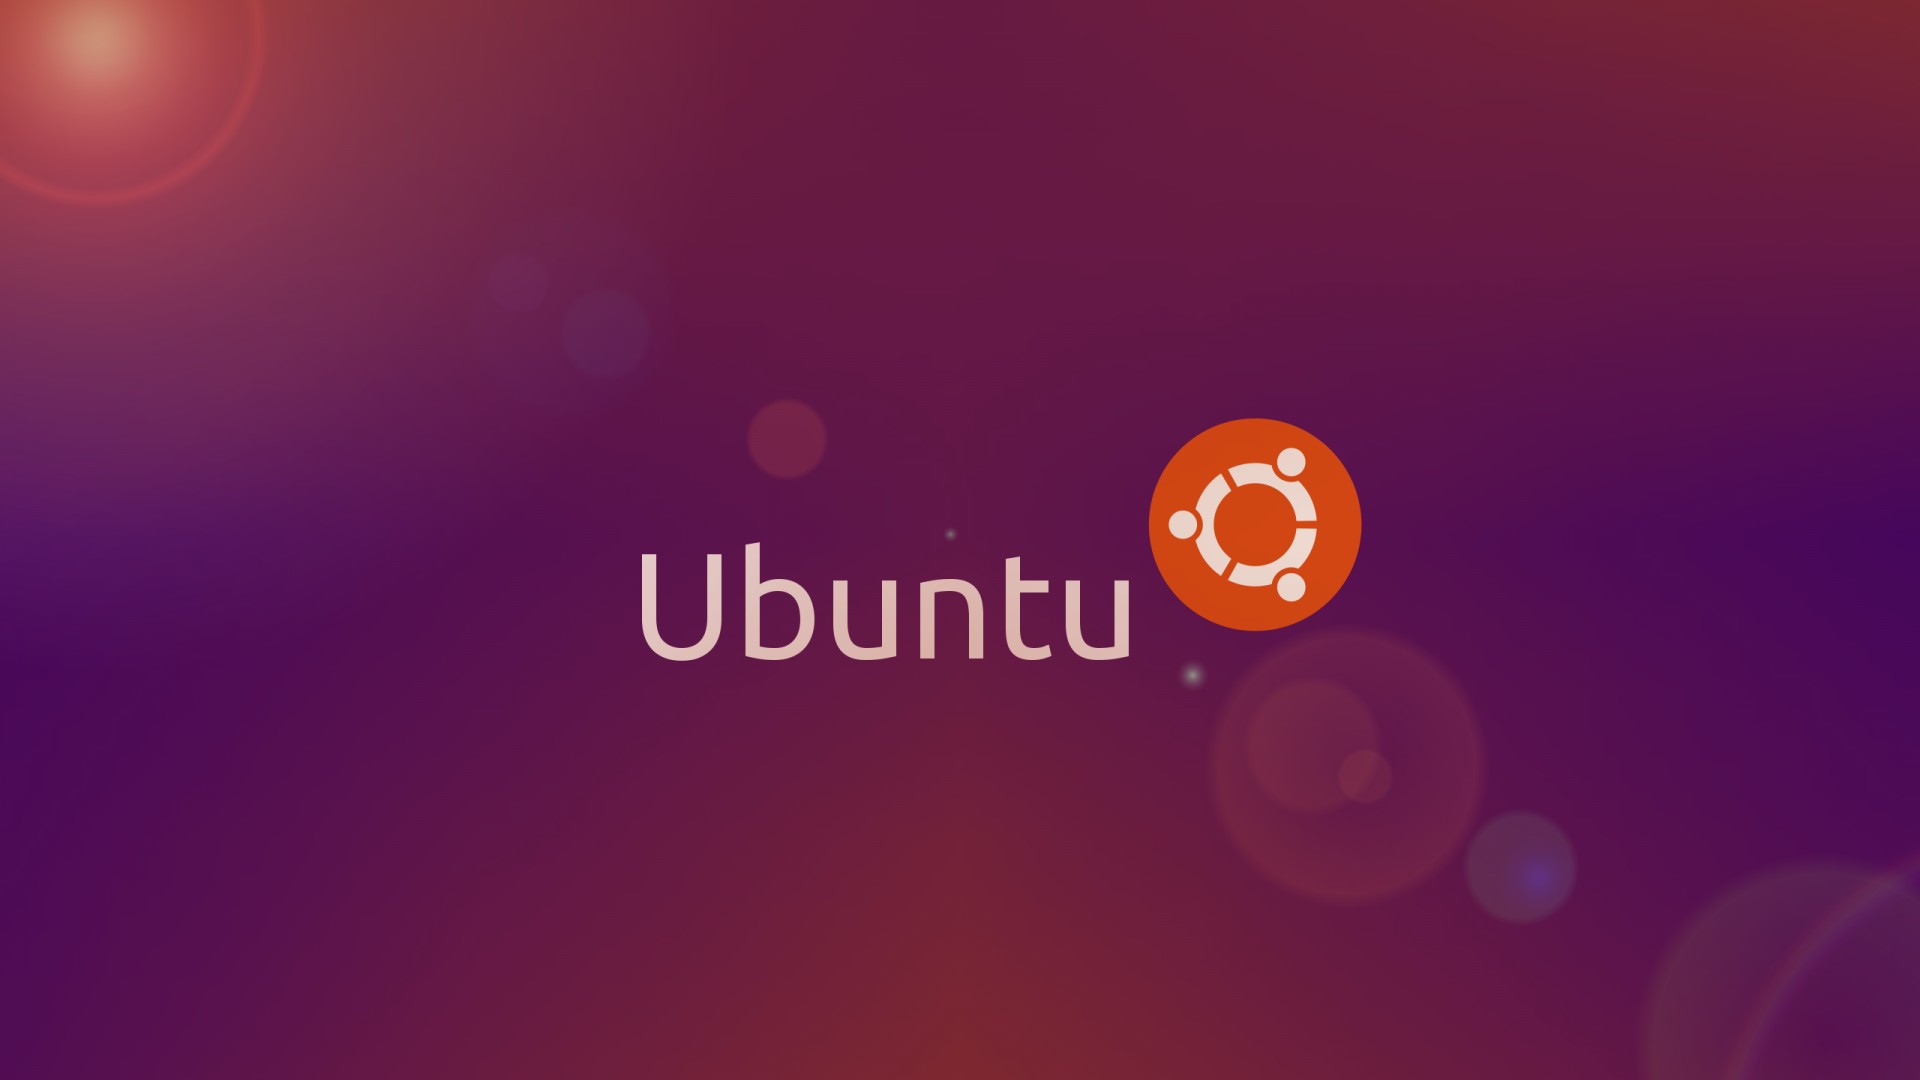 Ubuntu Wallpapers Hd Desktop Pixelstalk Net